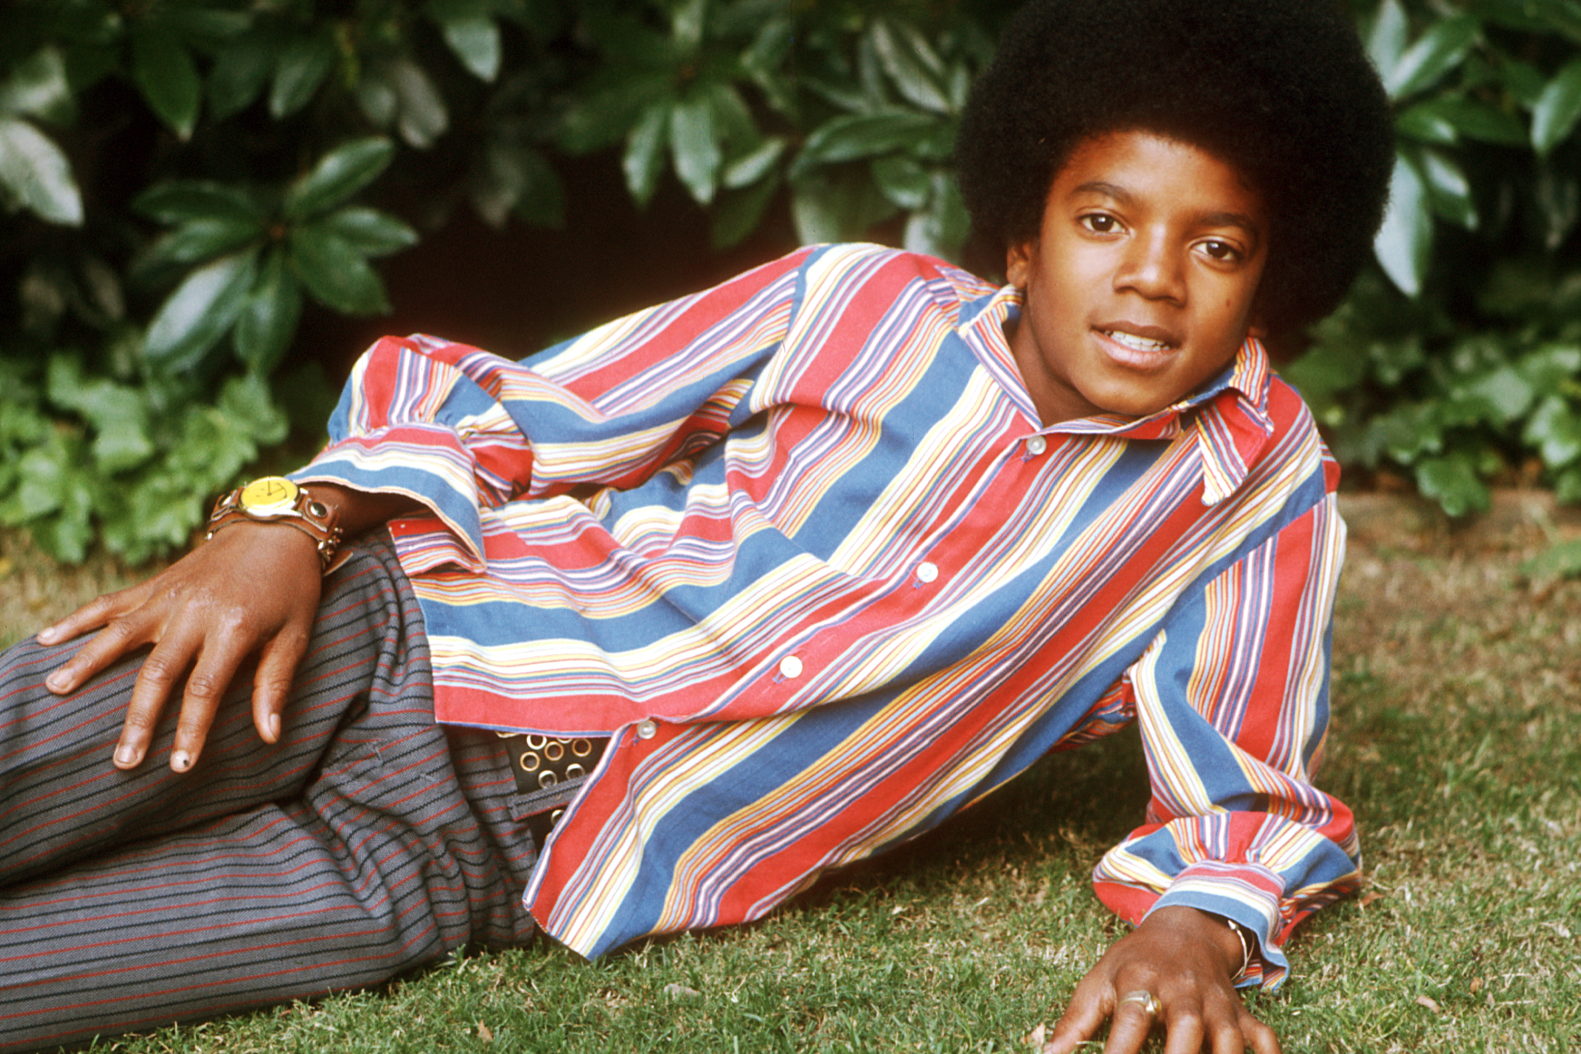 Michael Jacksonun Hayatini Anlatan Film Heyecanla Bekleniyor 969